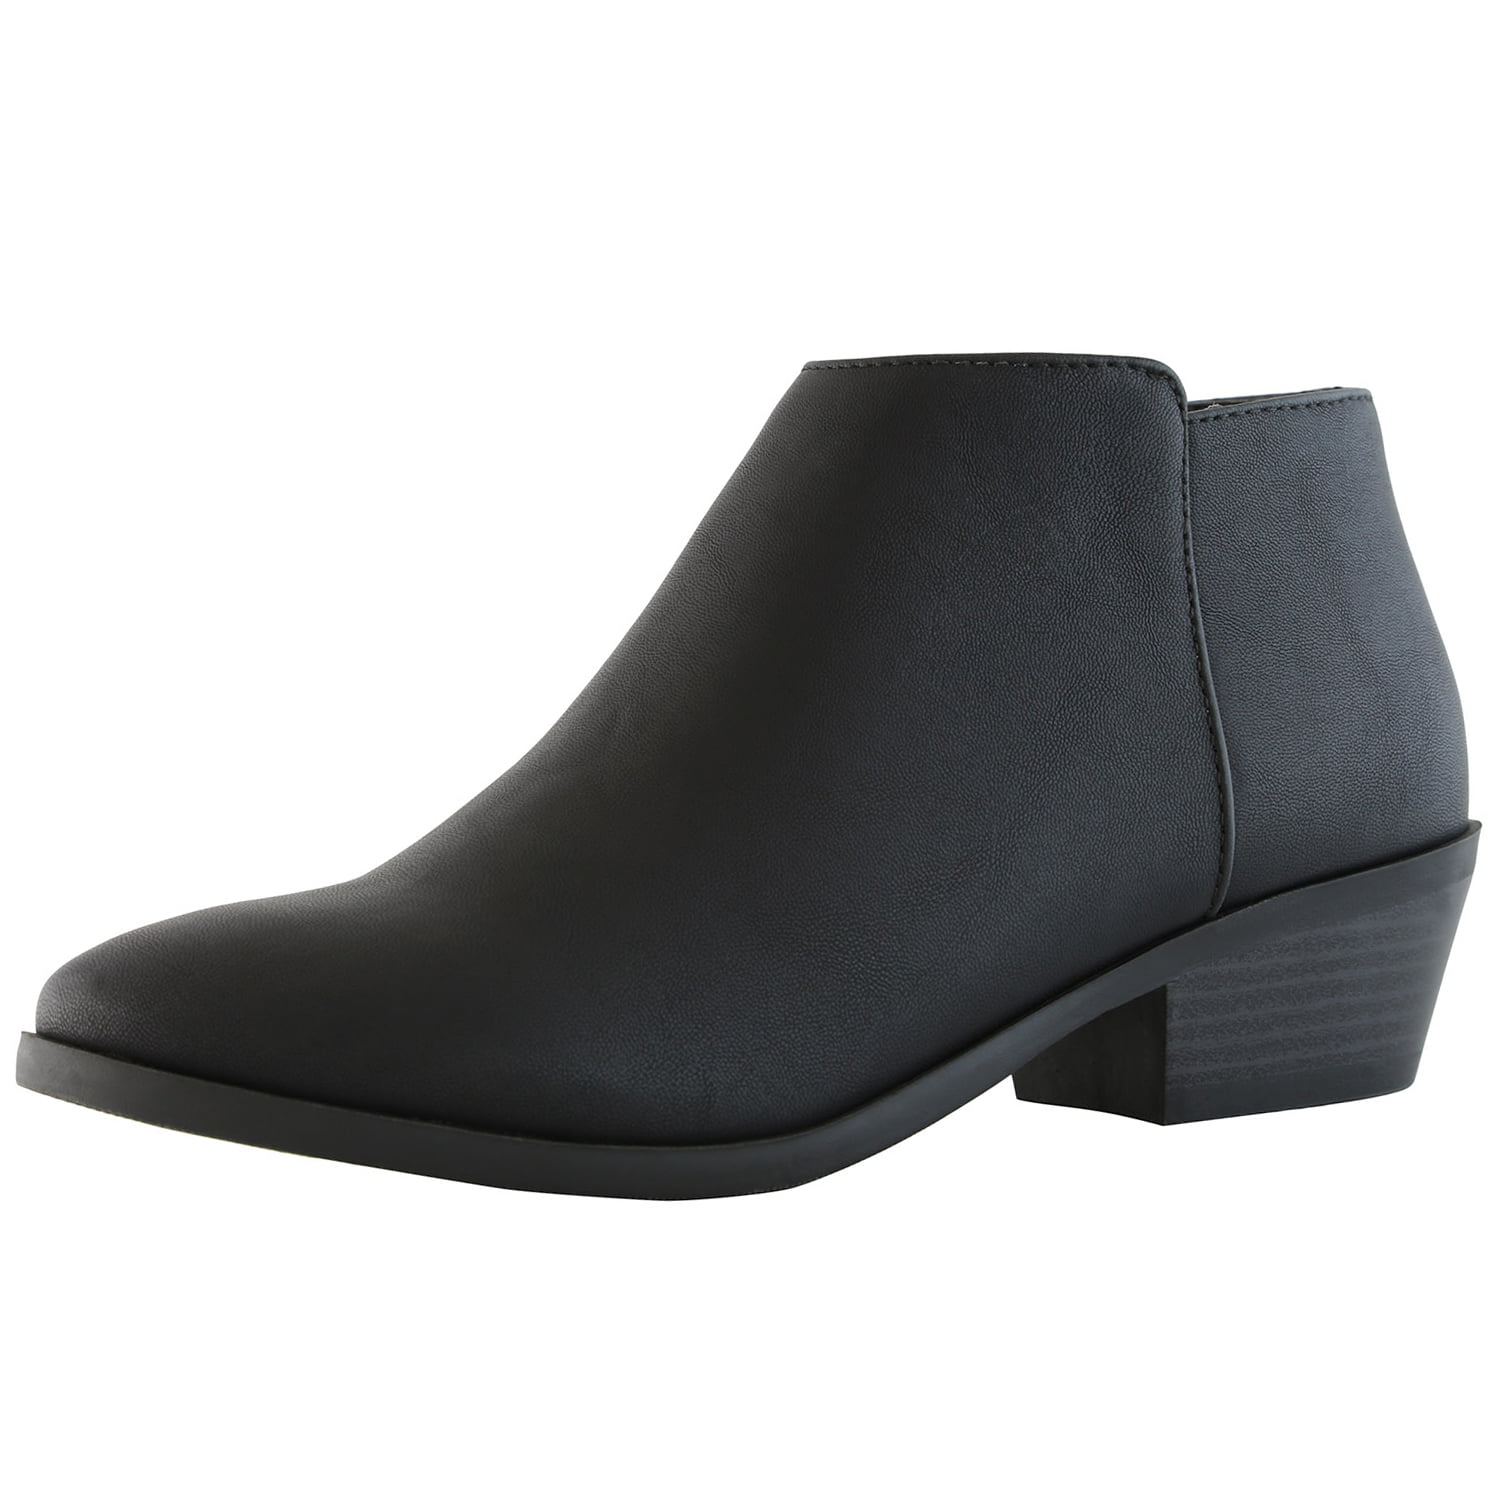 black booties flat heel